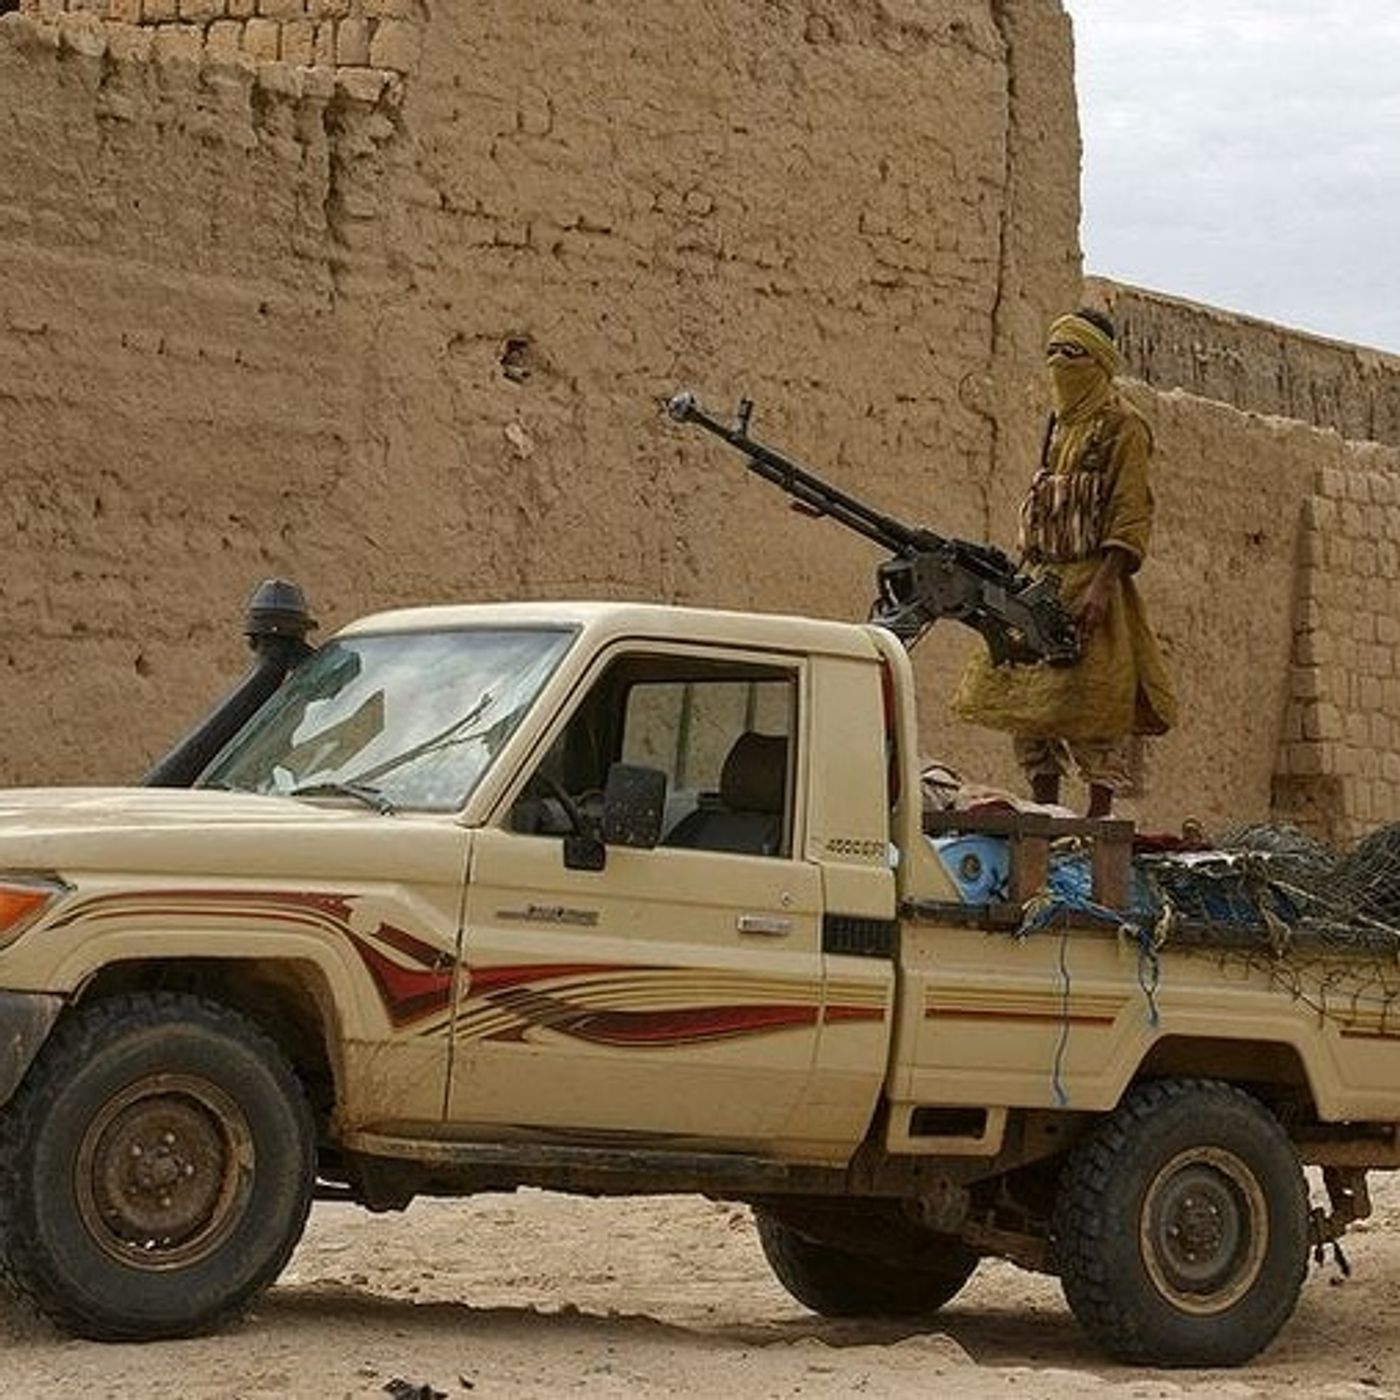 #426 - La Guerra delle Toyota, carri armati libici contro pick up del Chad